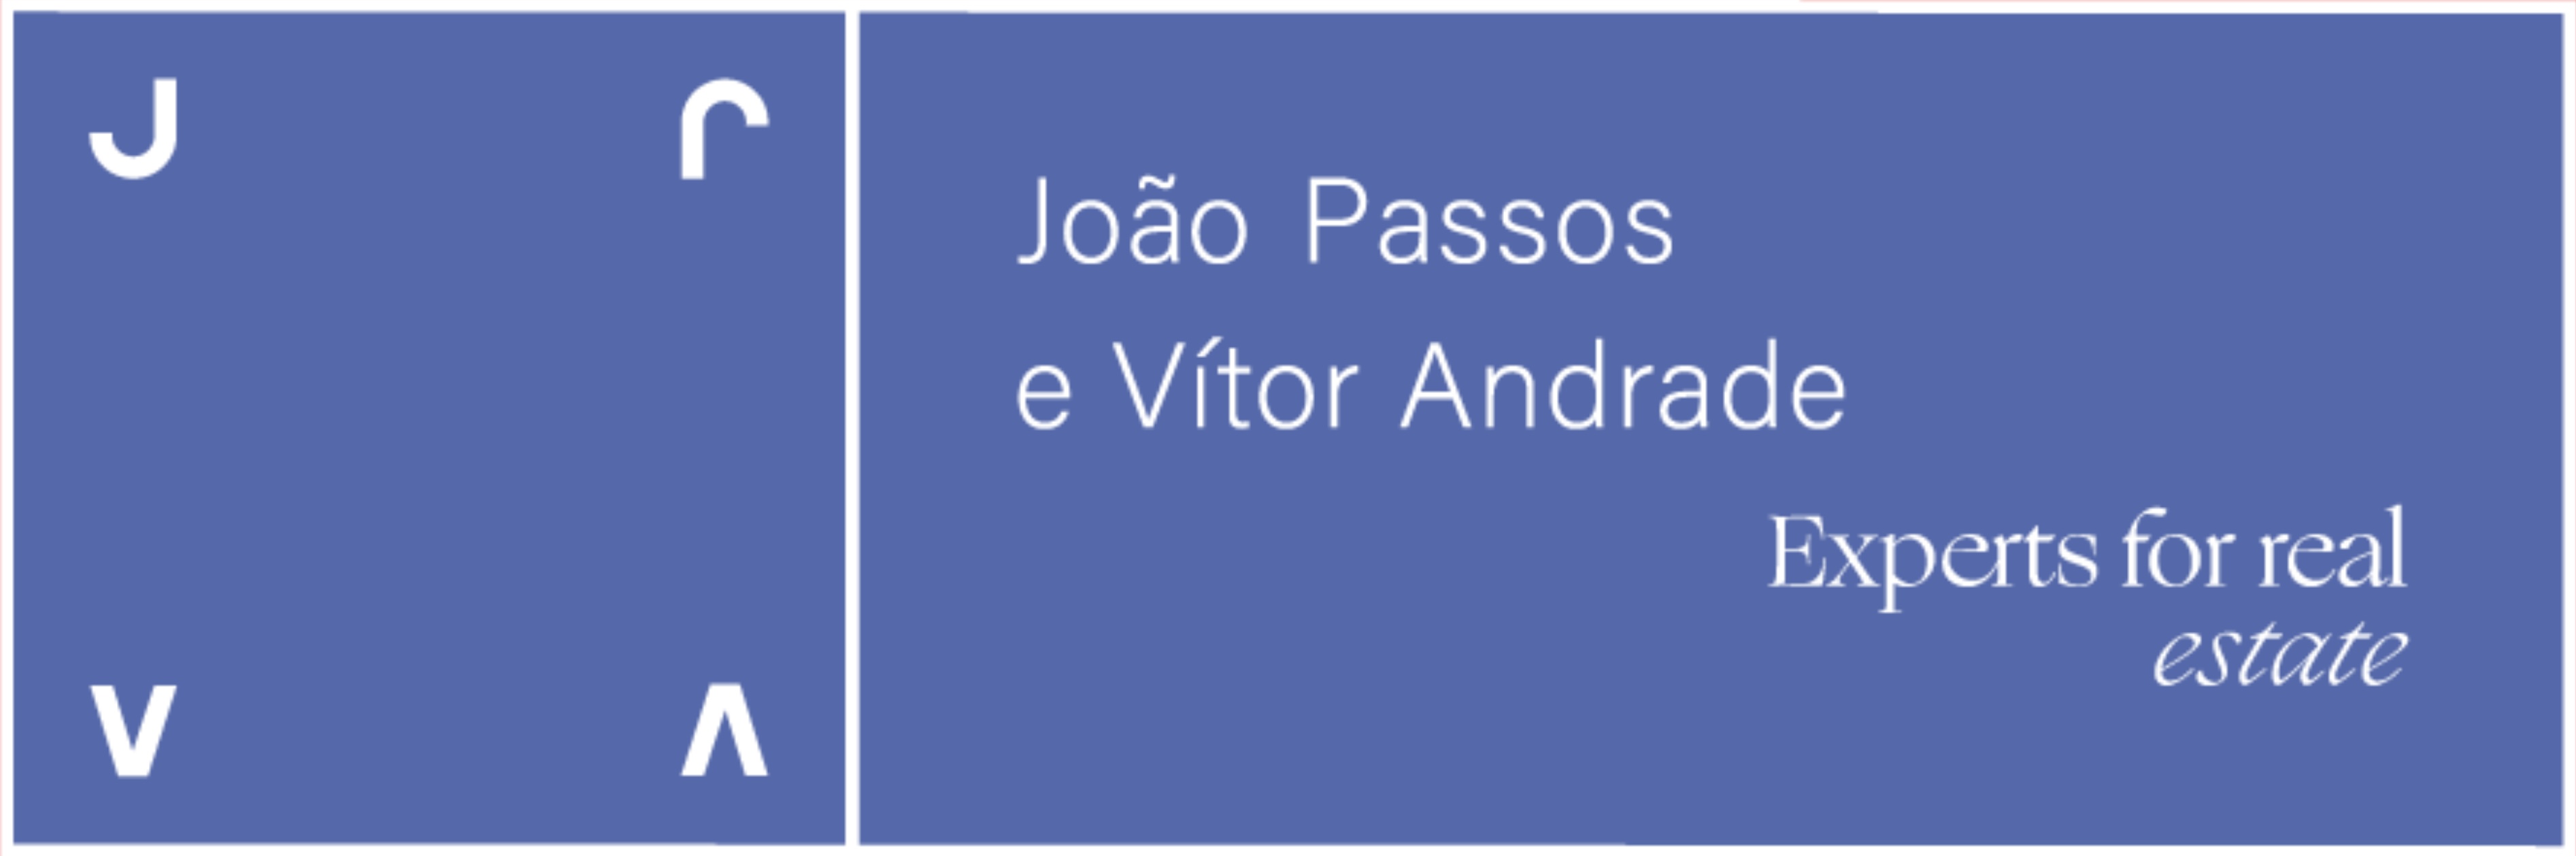 João Passos e Vítor Andrade - Agent Contact